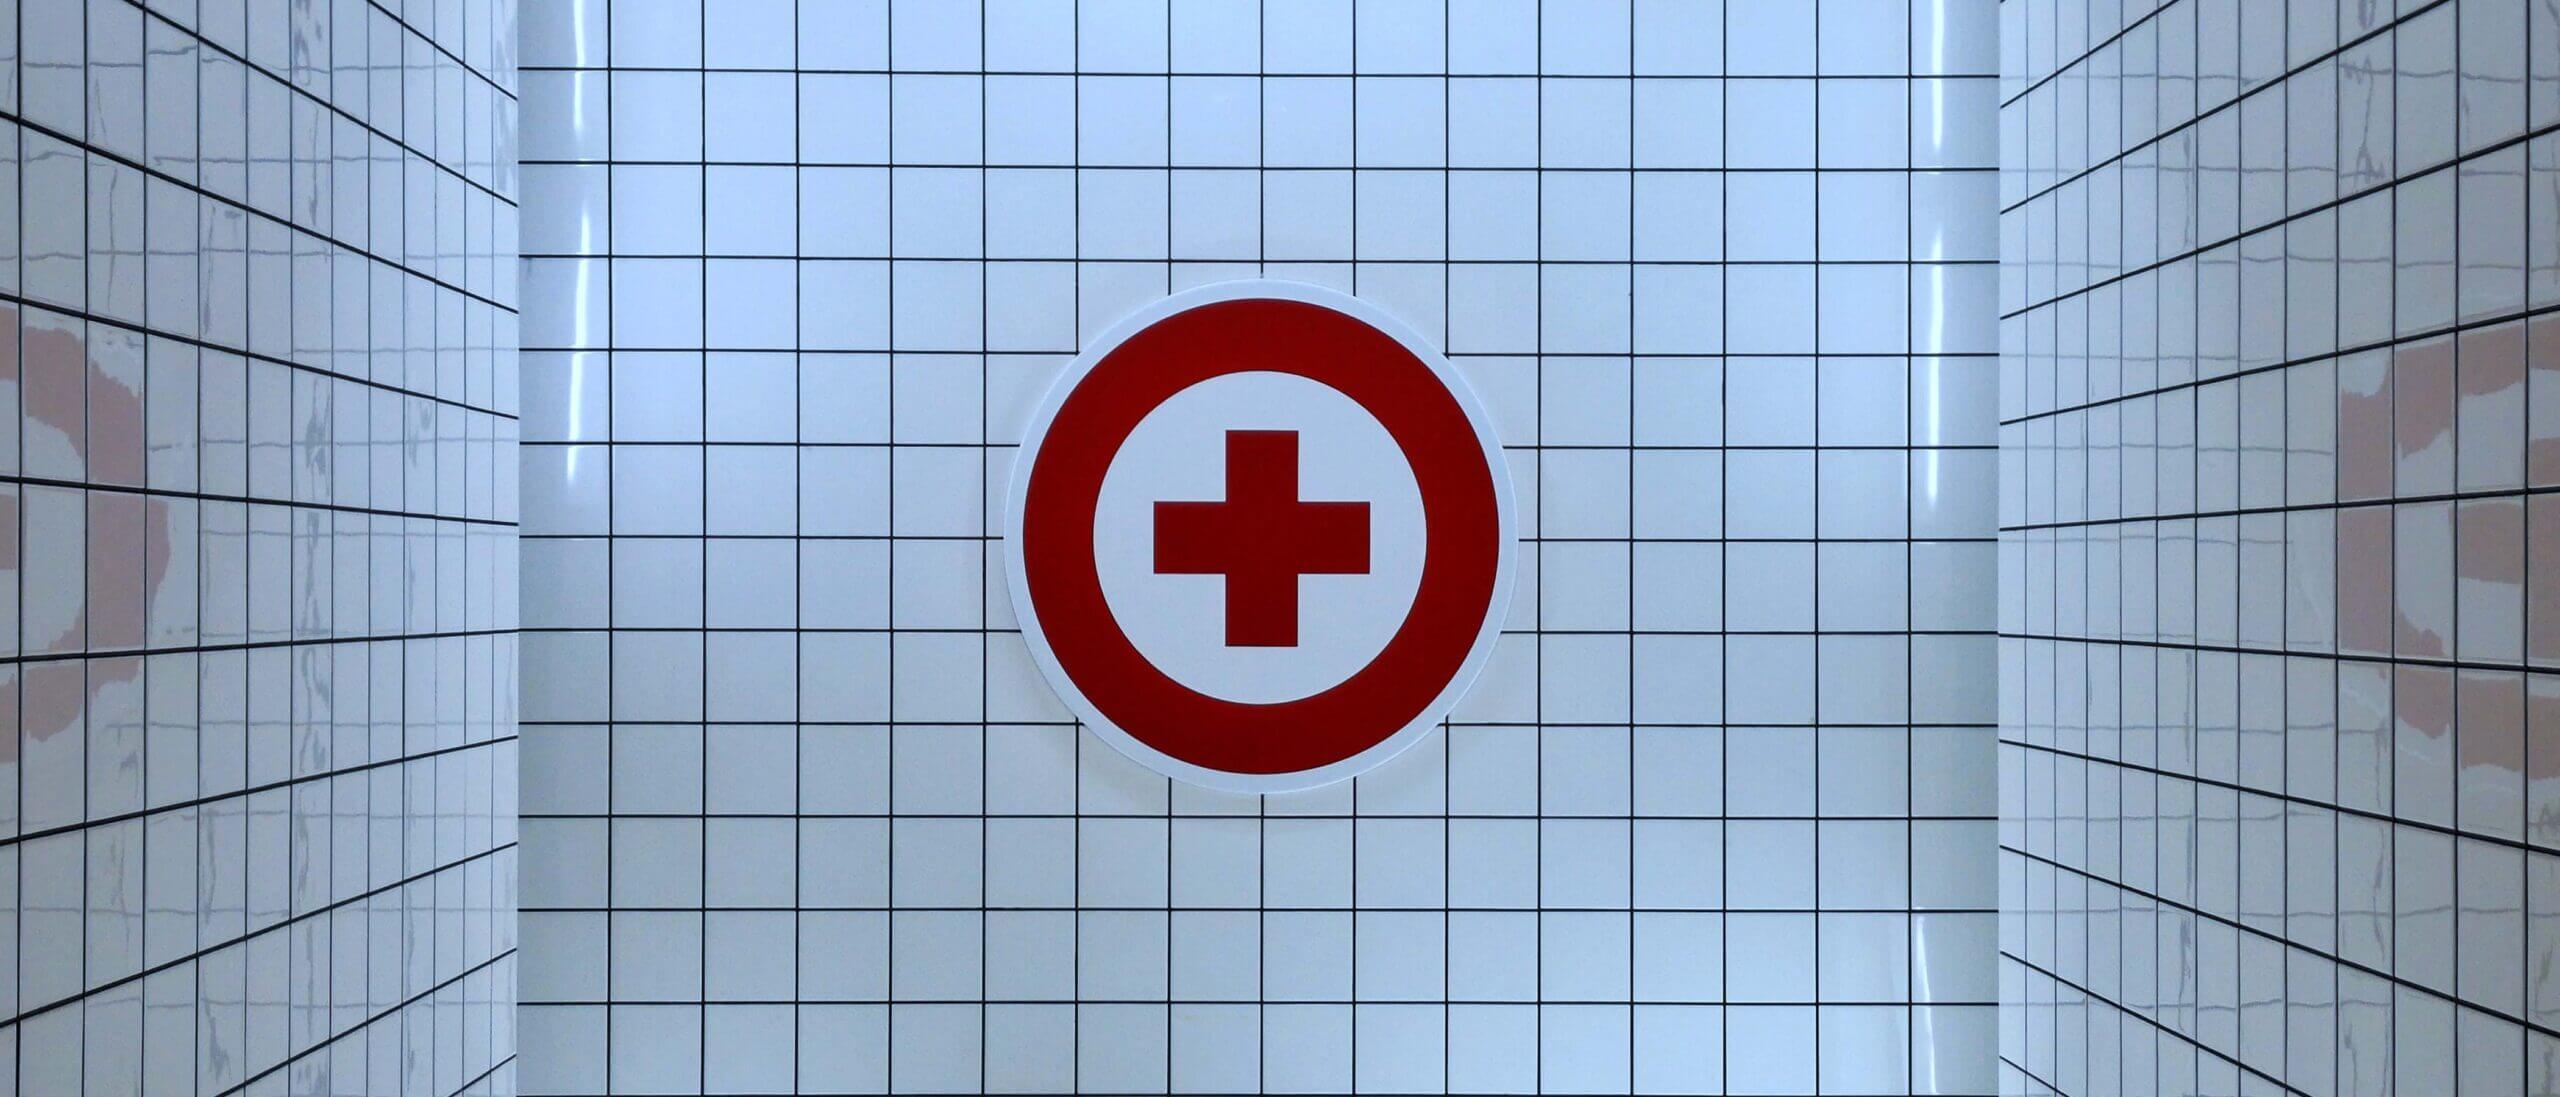 Red medical cross symbol on white tile